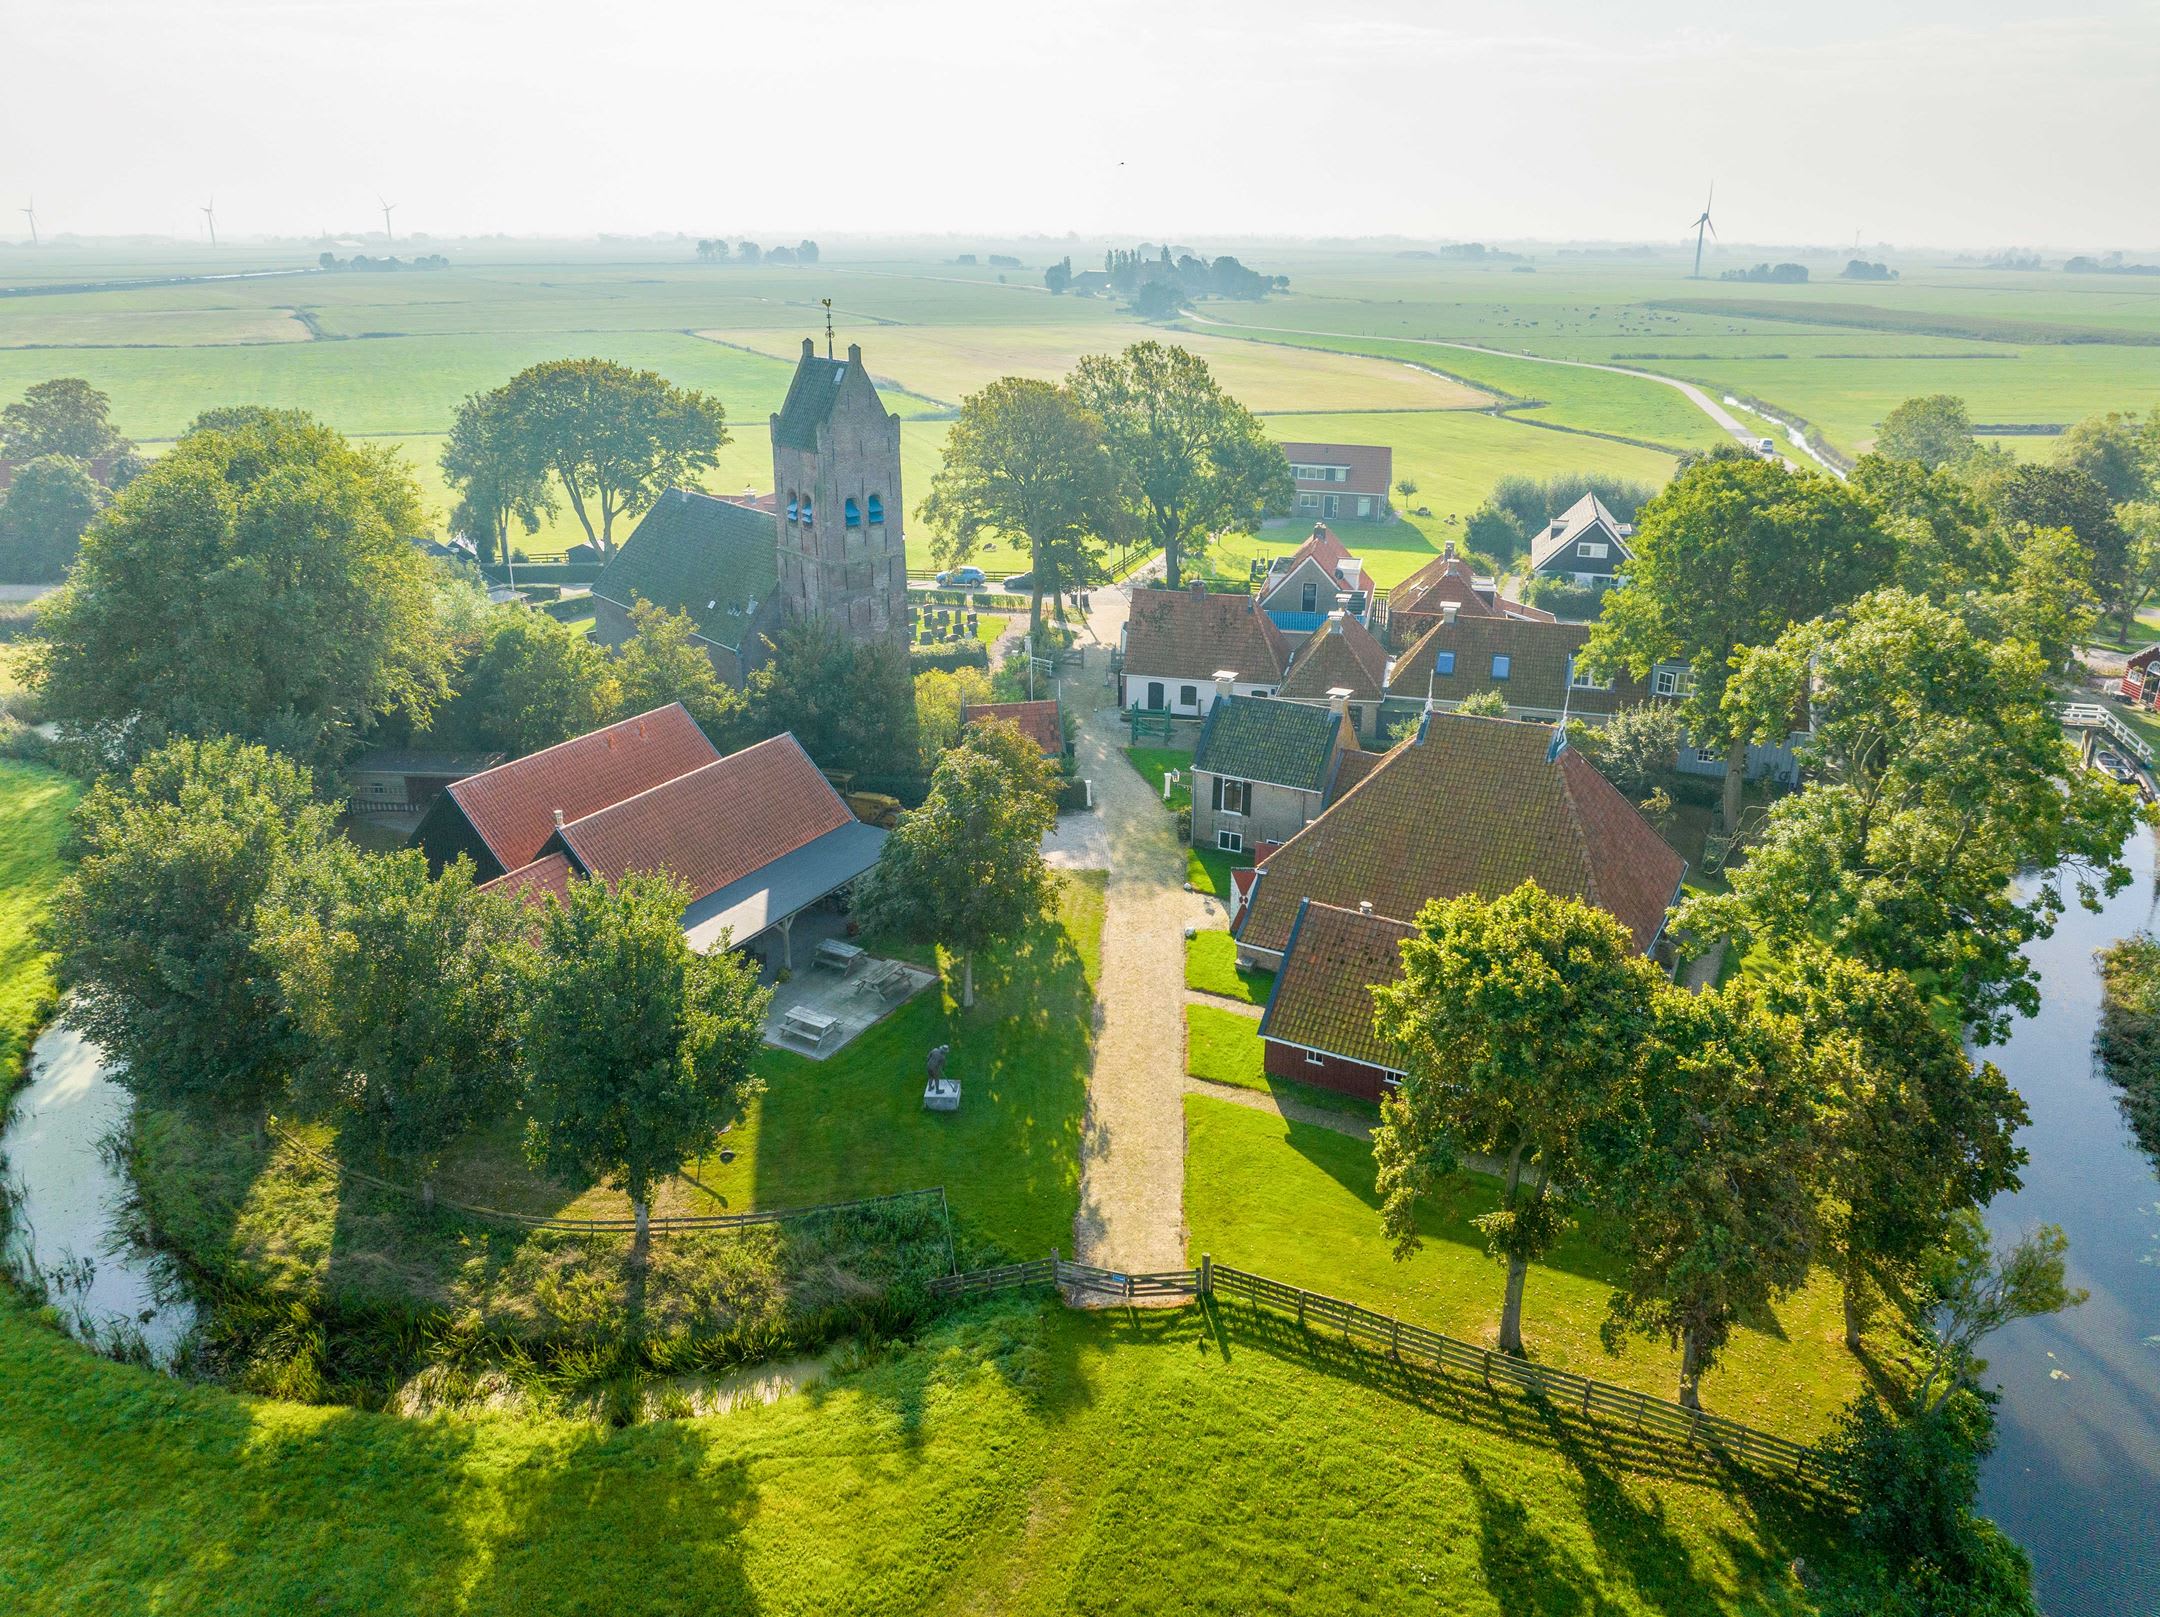 Fries dorp dat te koop staat, trekt veel bekijks: 'Vrienden willen daar samenwonen'